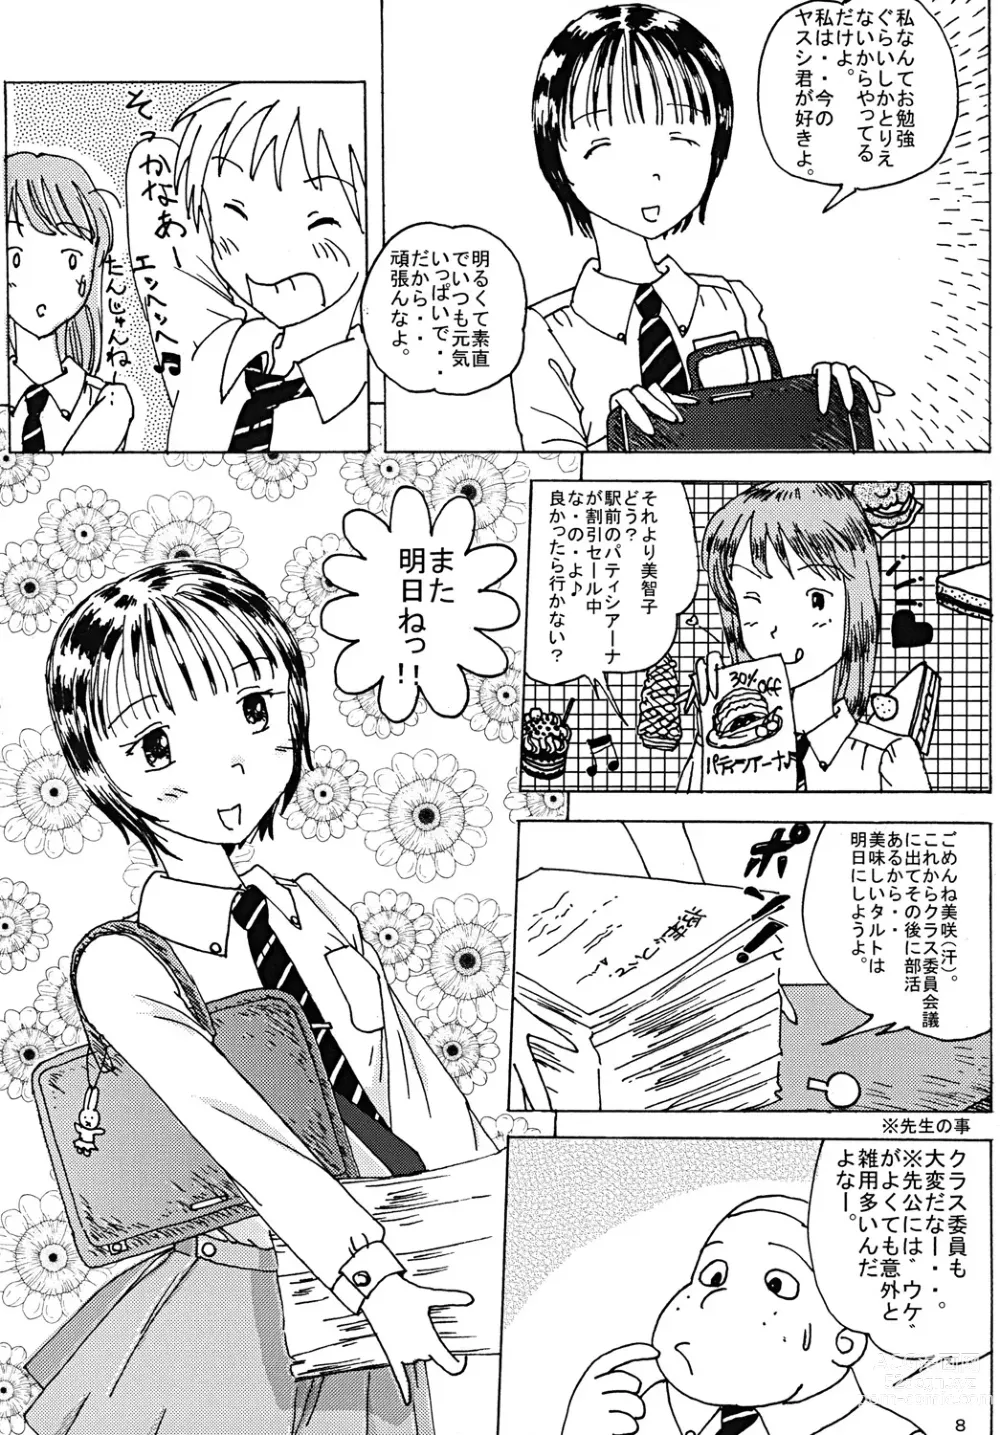 Page 7 of doujinshi Mune Ippai no Dizzy